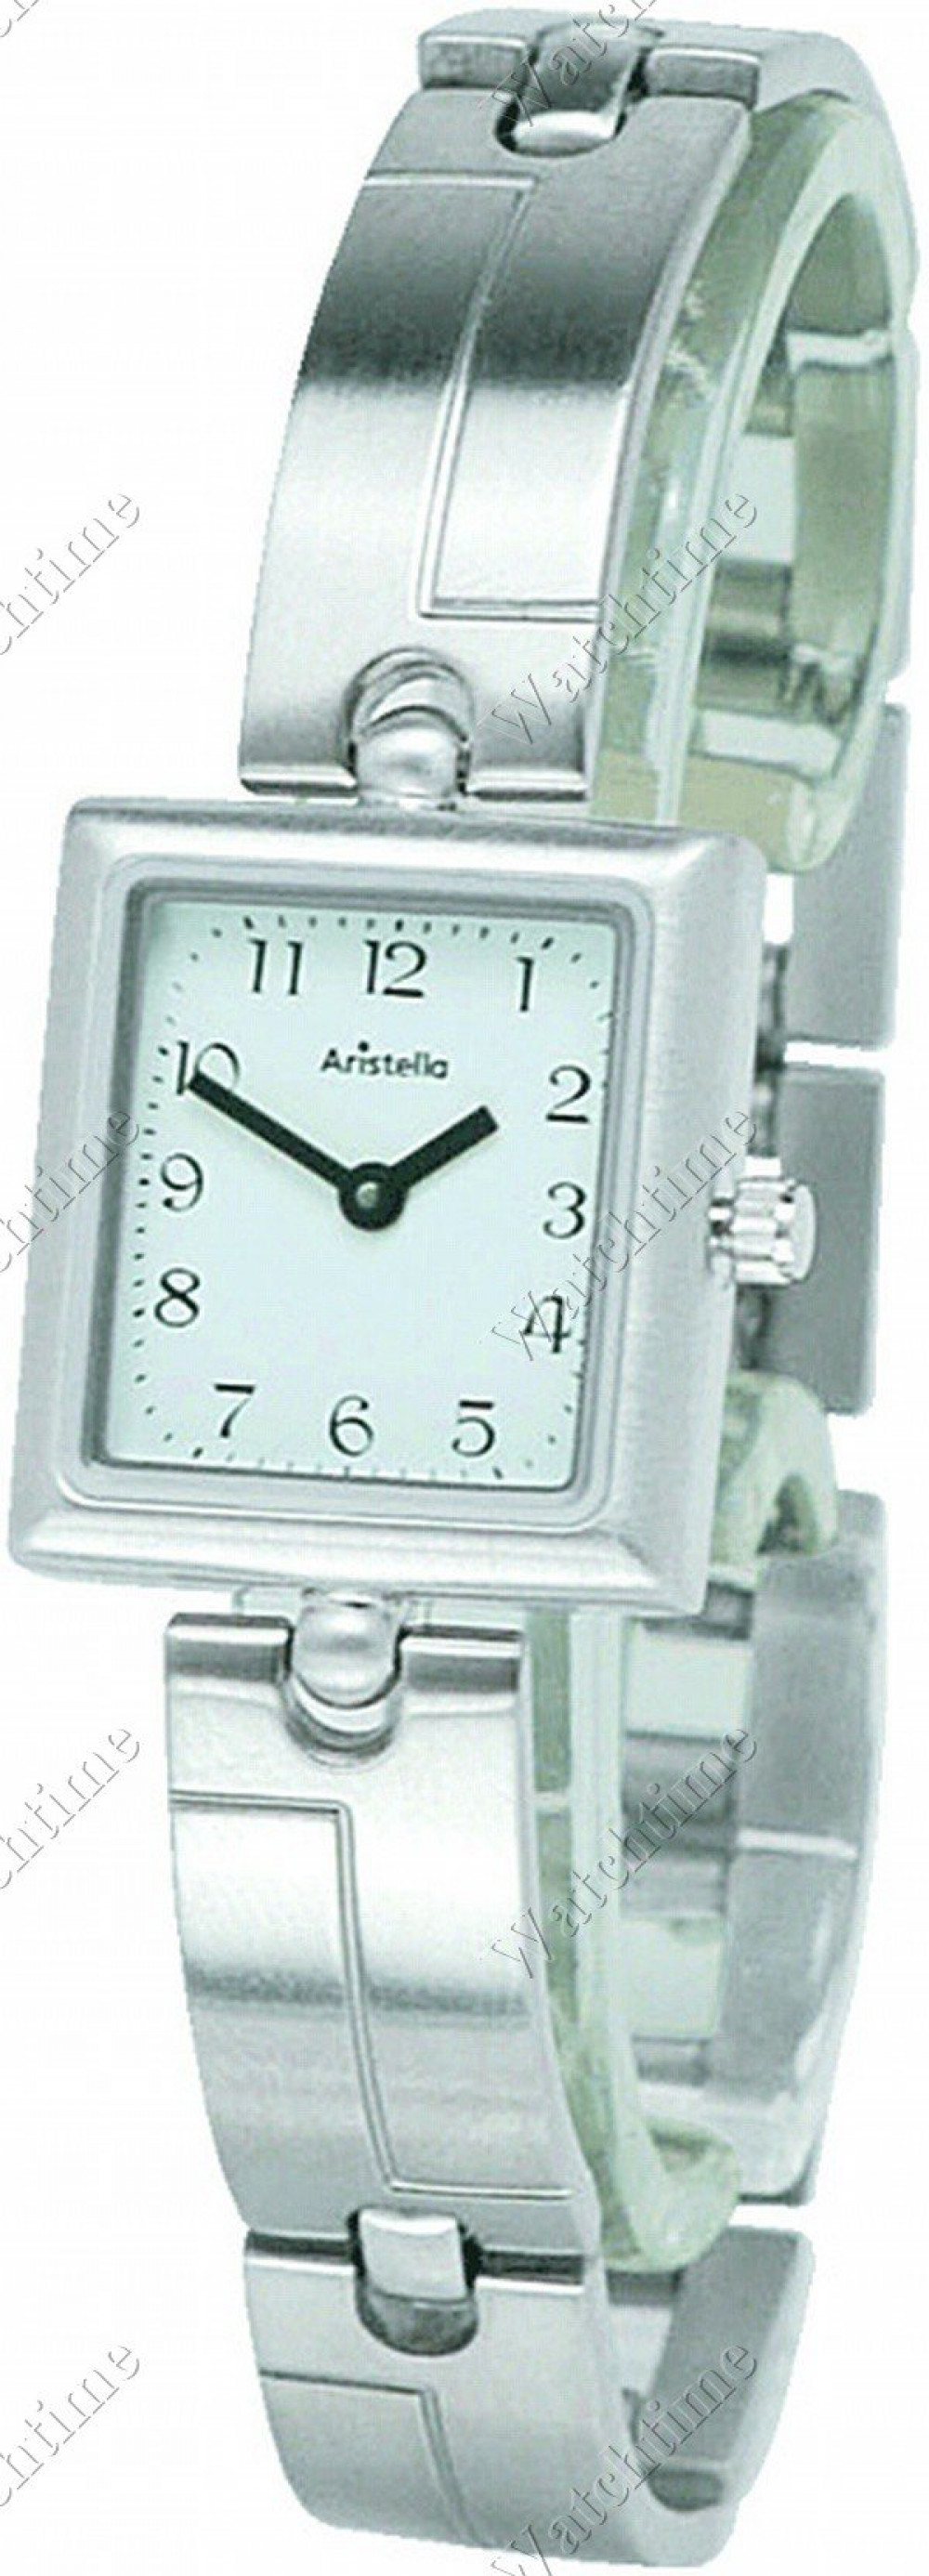 Zegarek firmy Aristella, model 120W